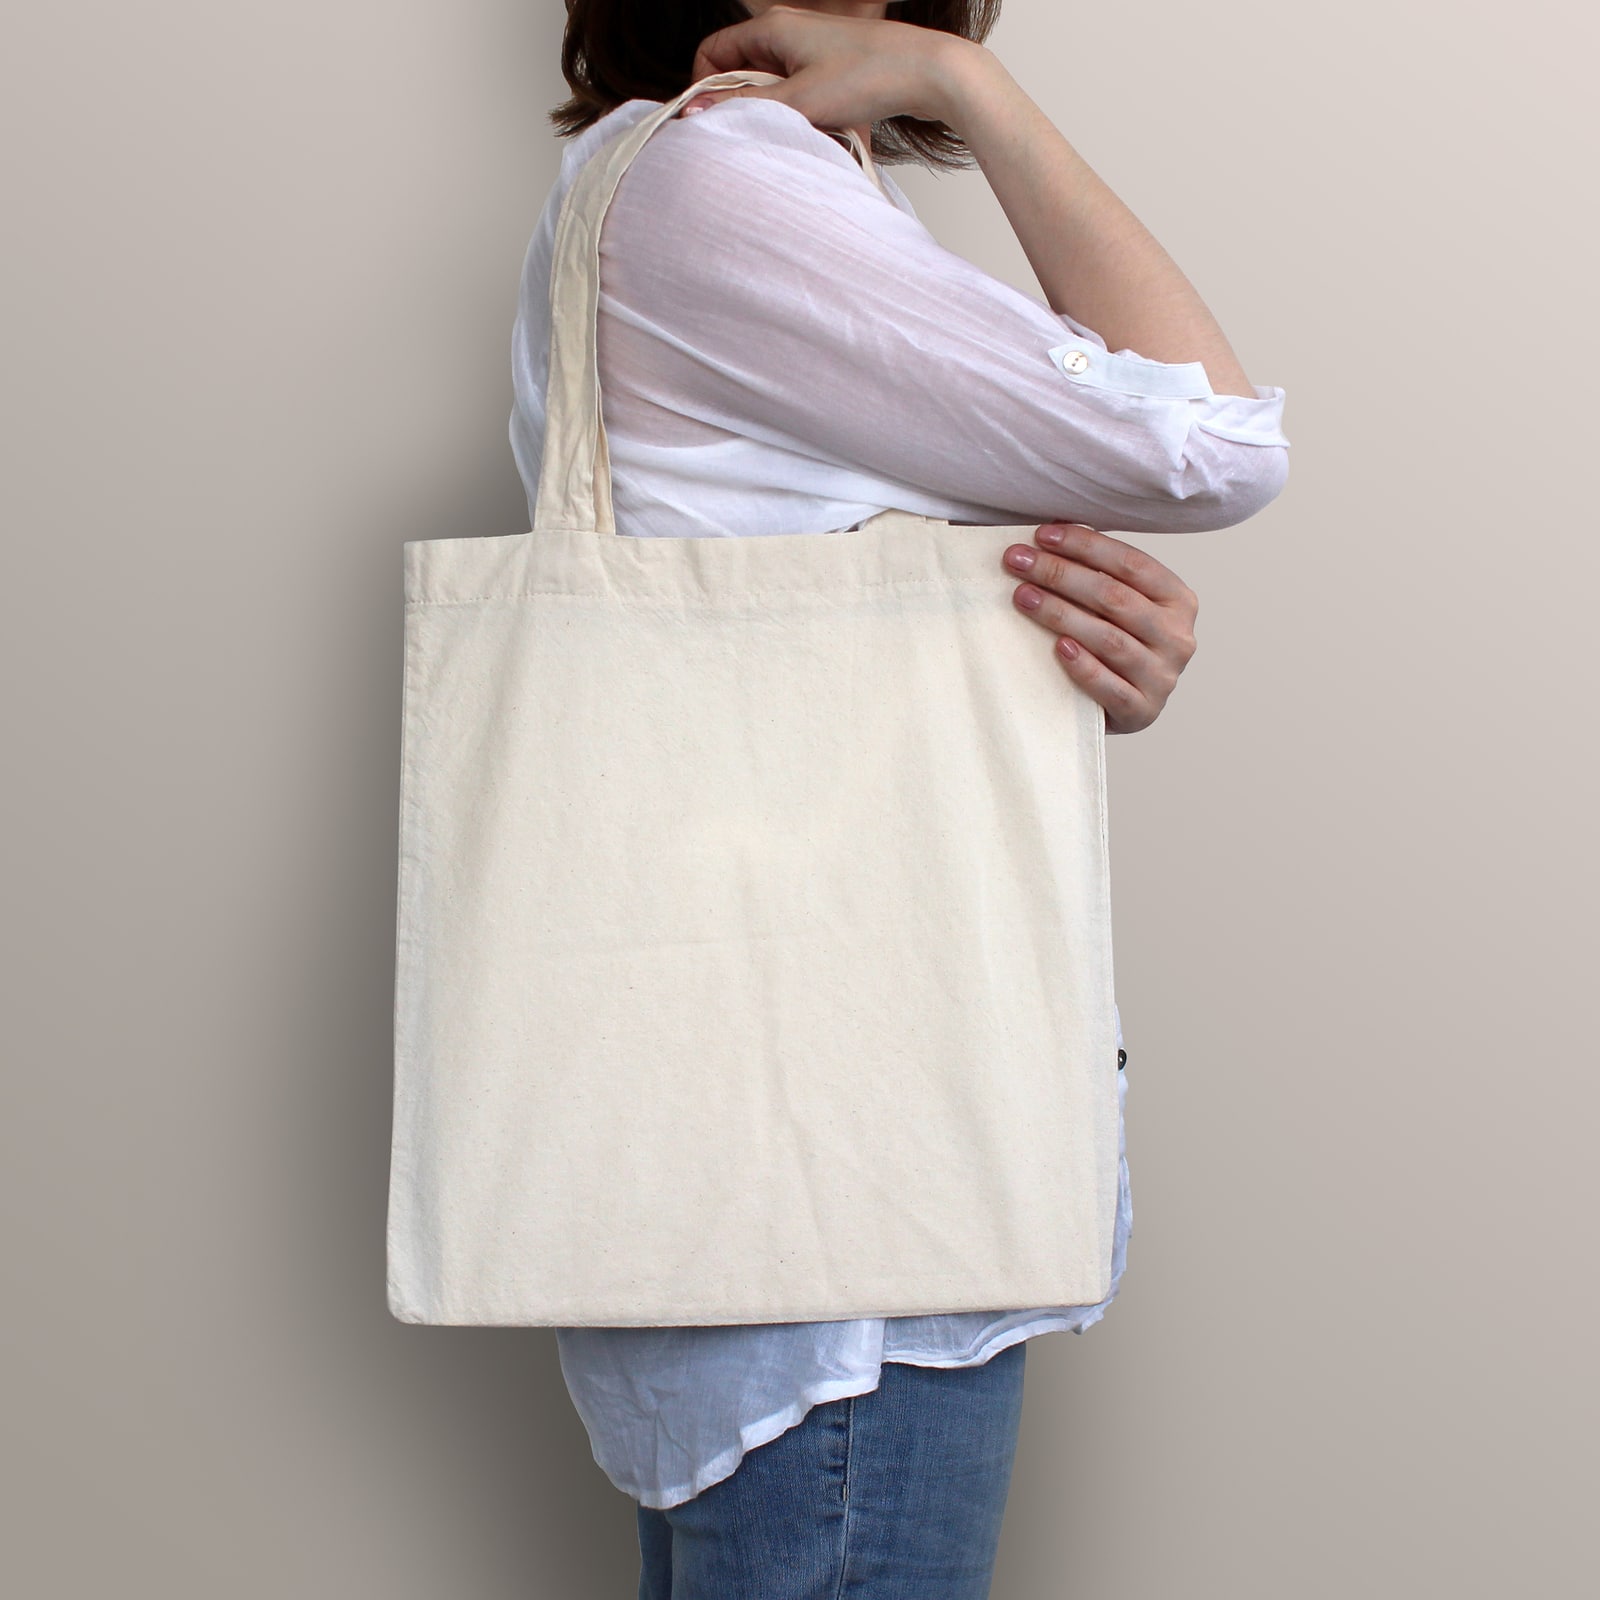 Girl is holding blank cotton eco bag design mockup. Handmade shopping bag for girls.